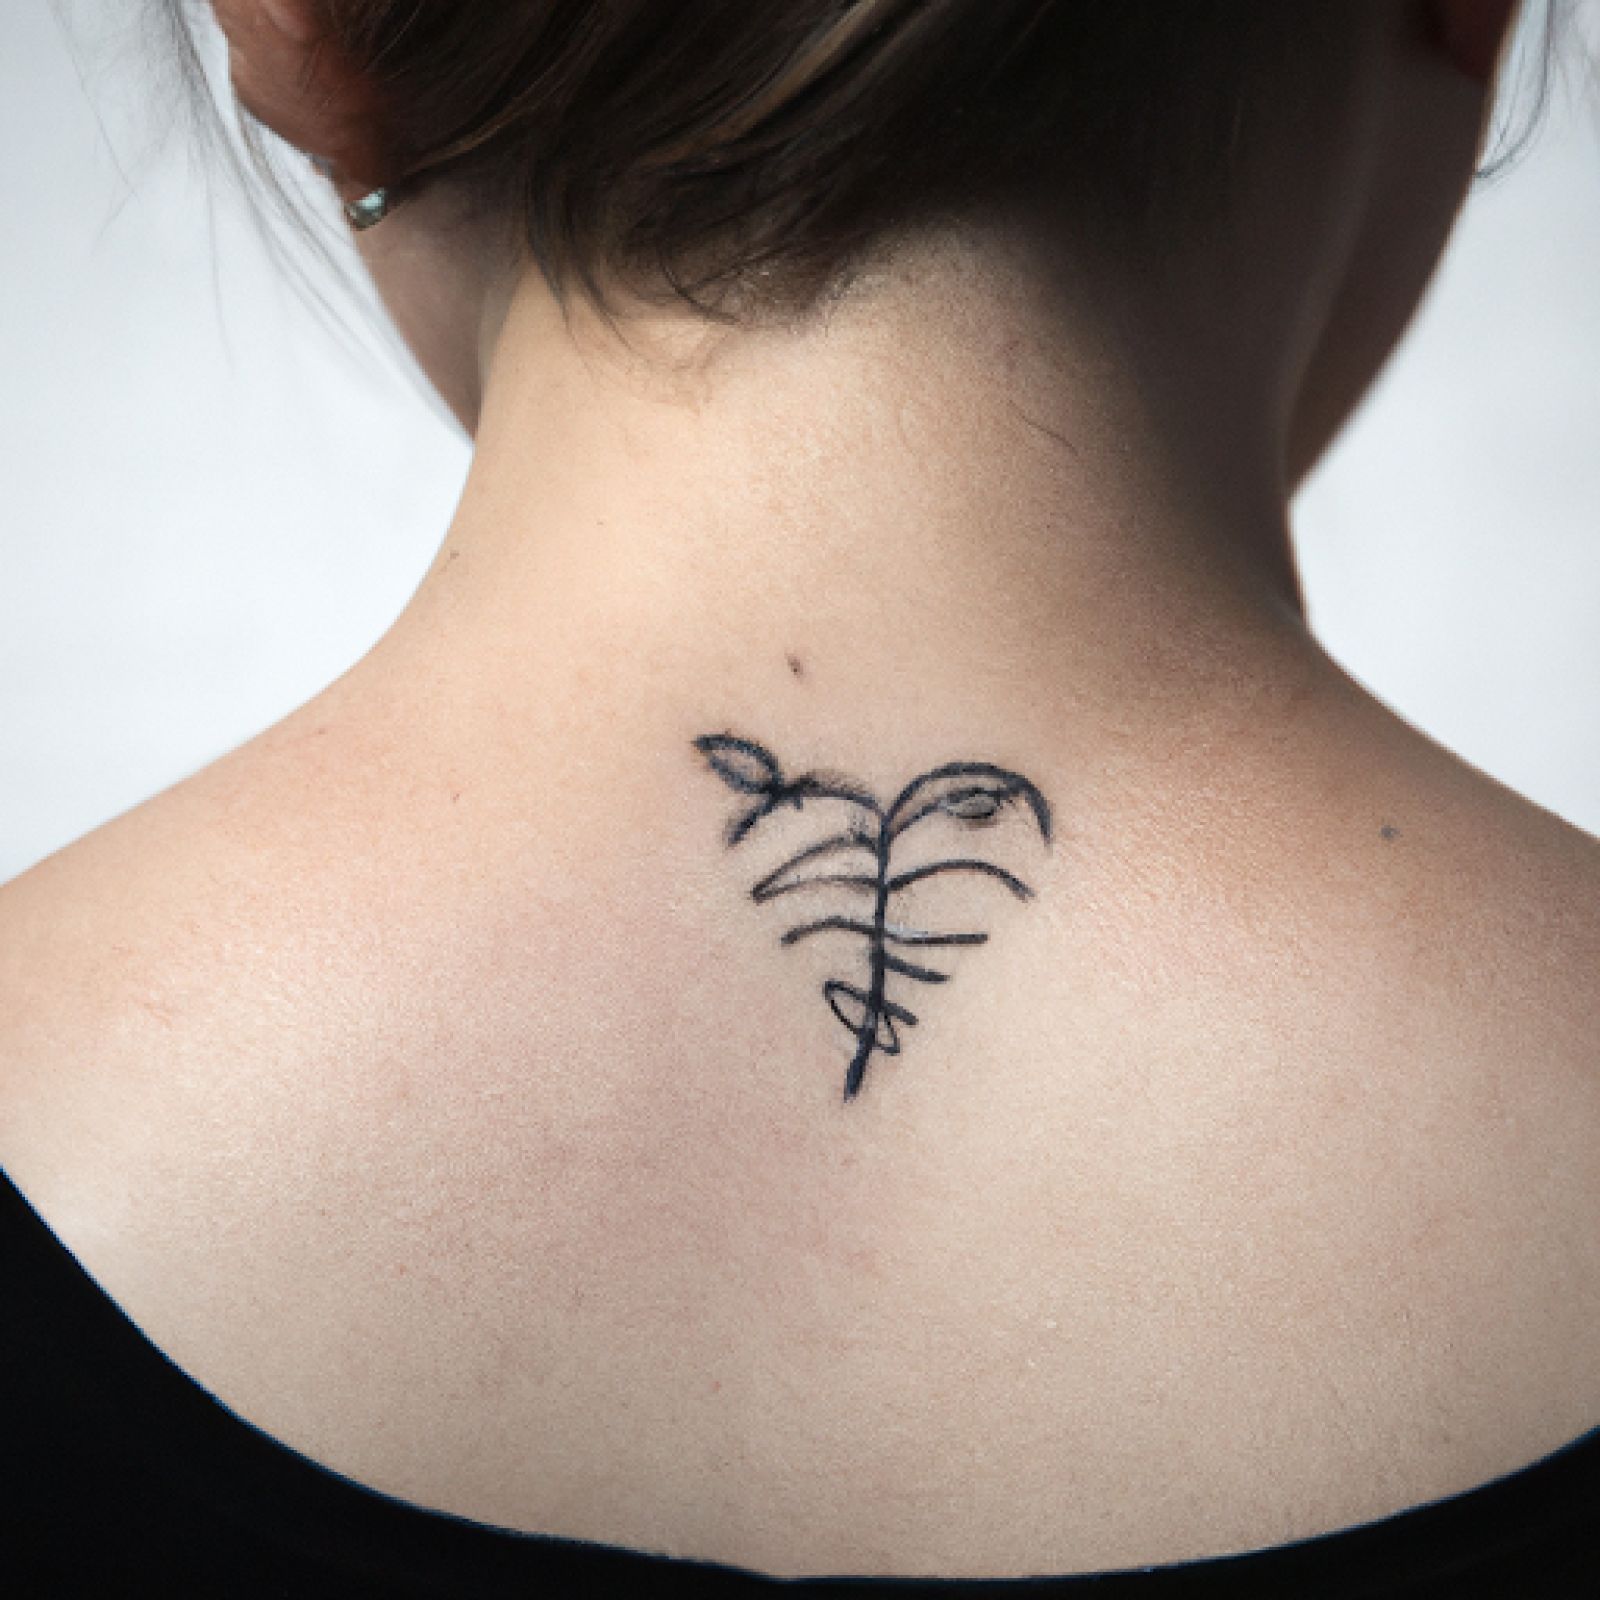 Broken heart tattoo on neck for women